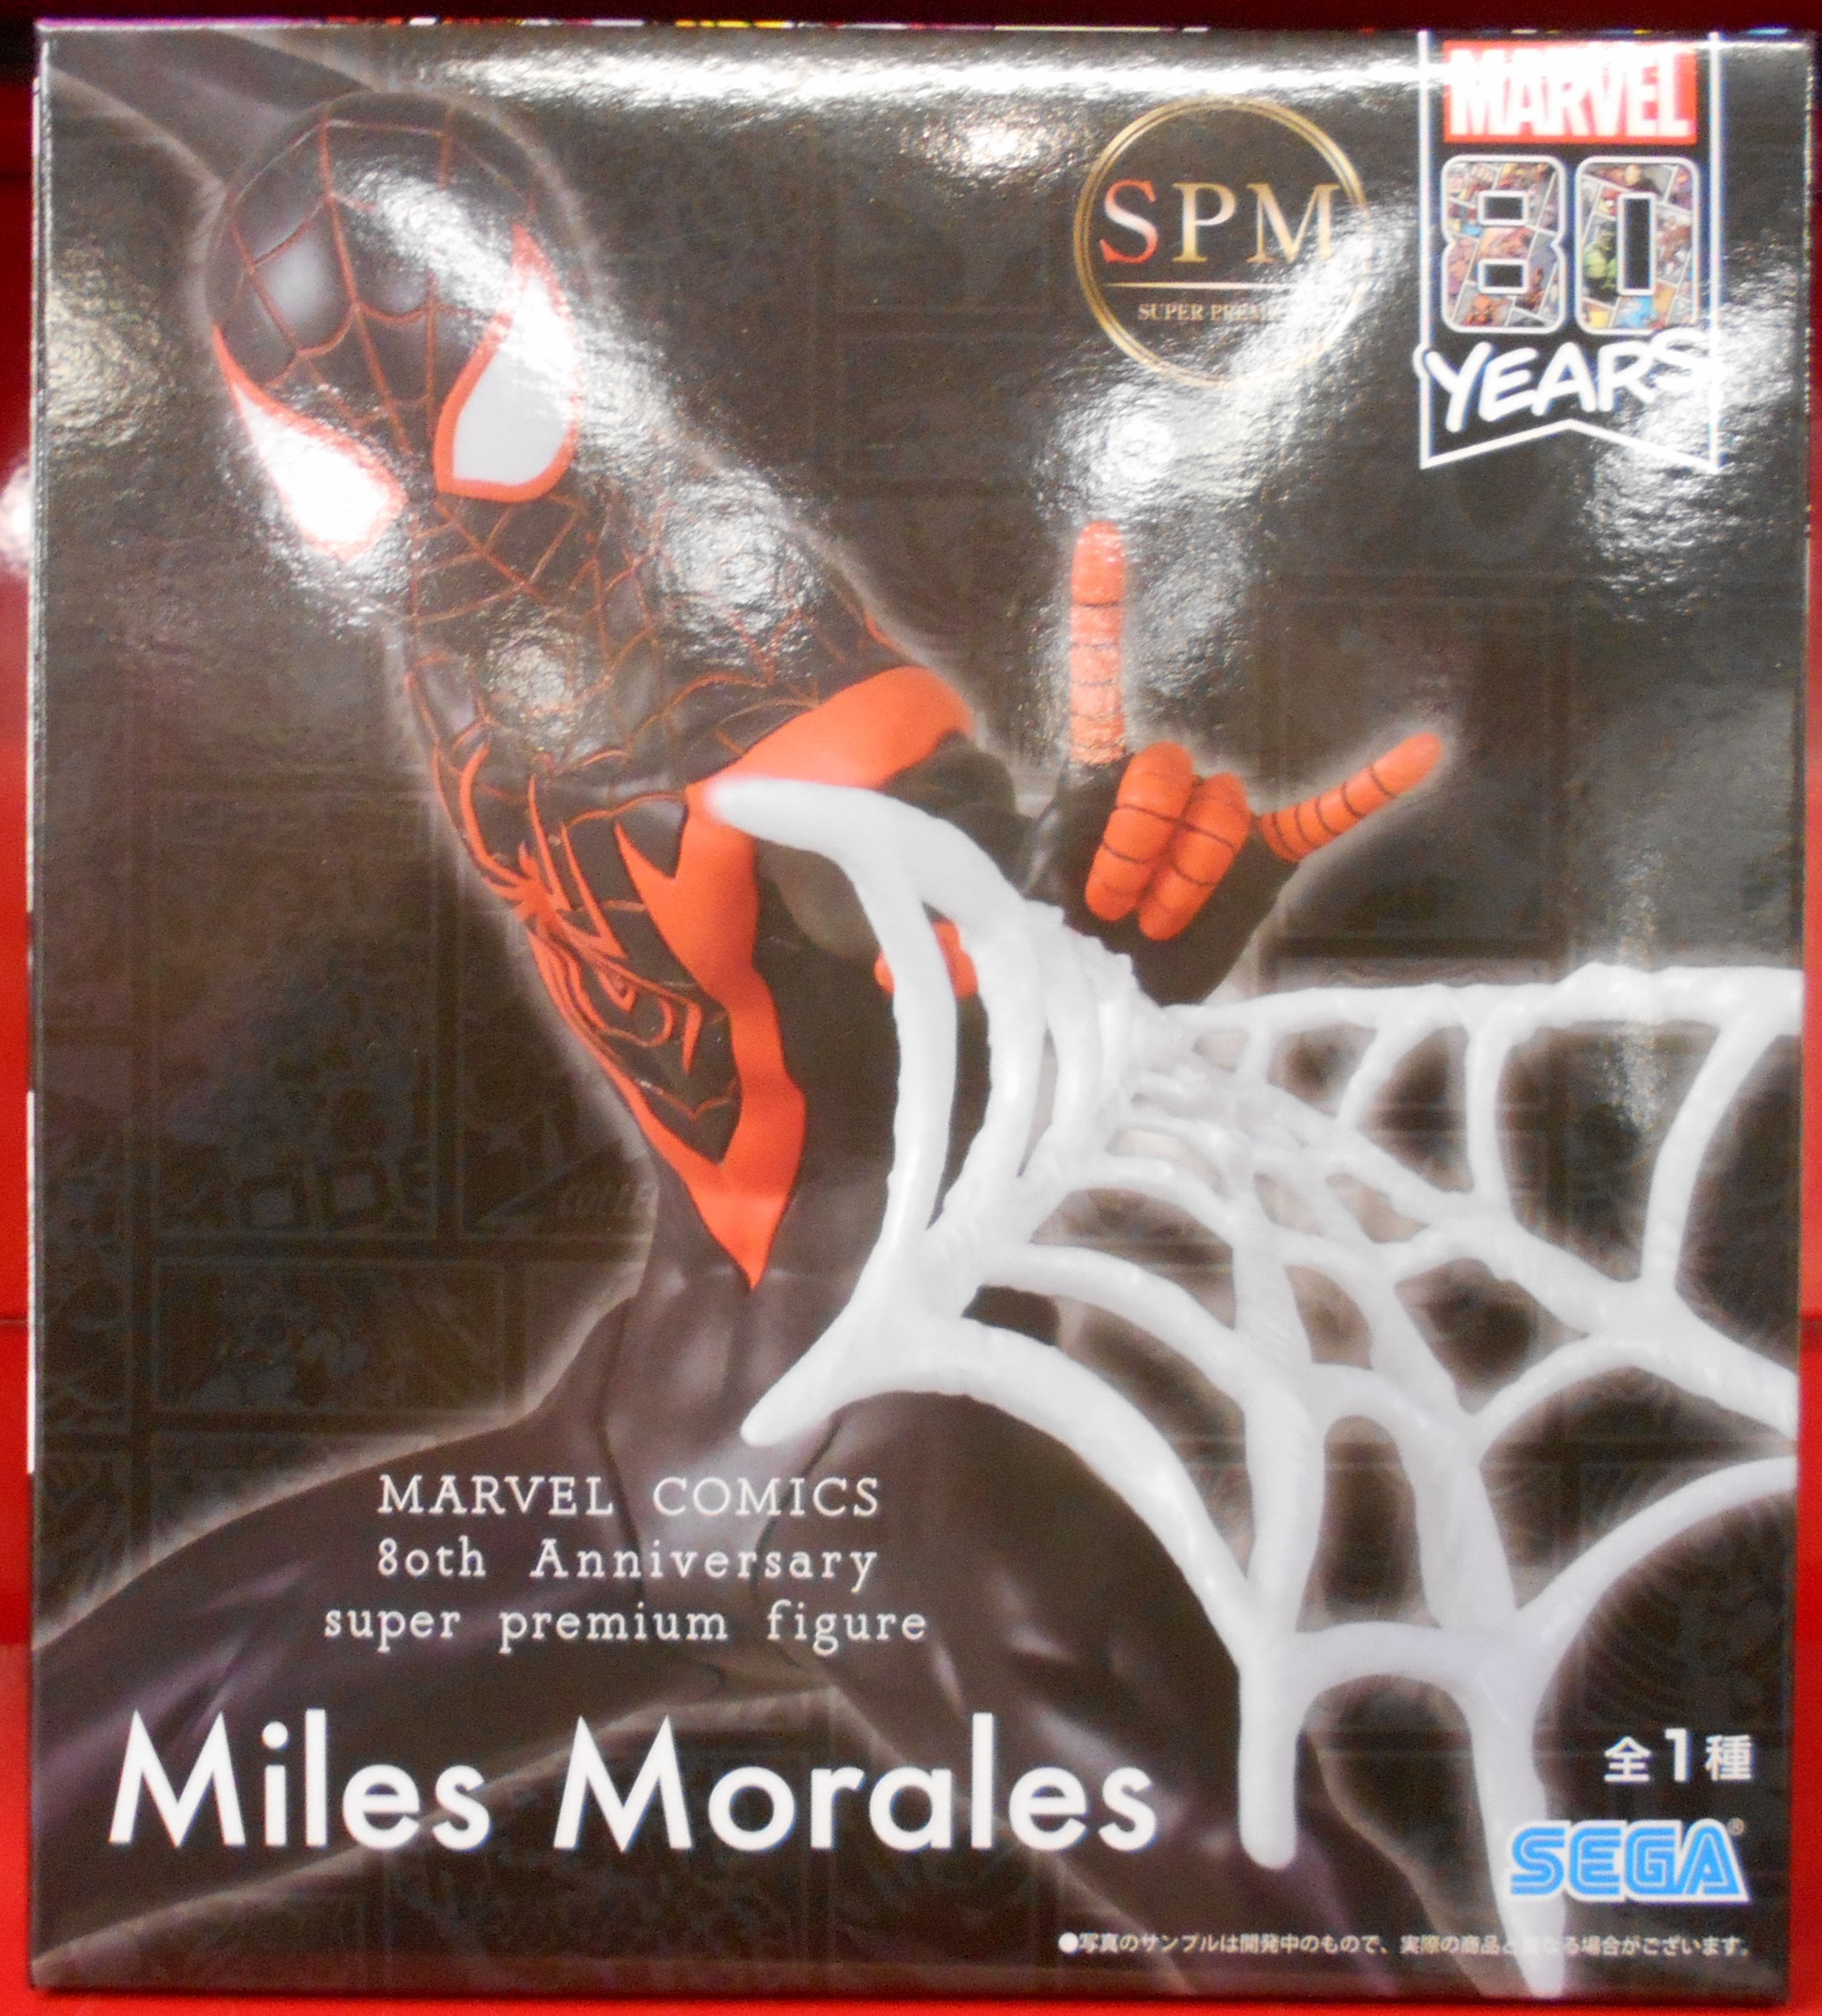 Sega Spm Super Premium Figure Miles Morales Marvel Comics 80th